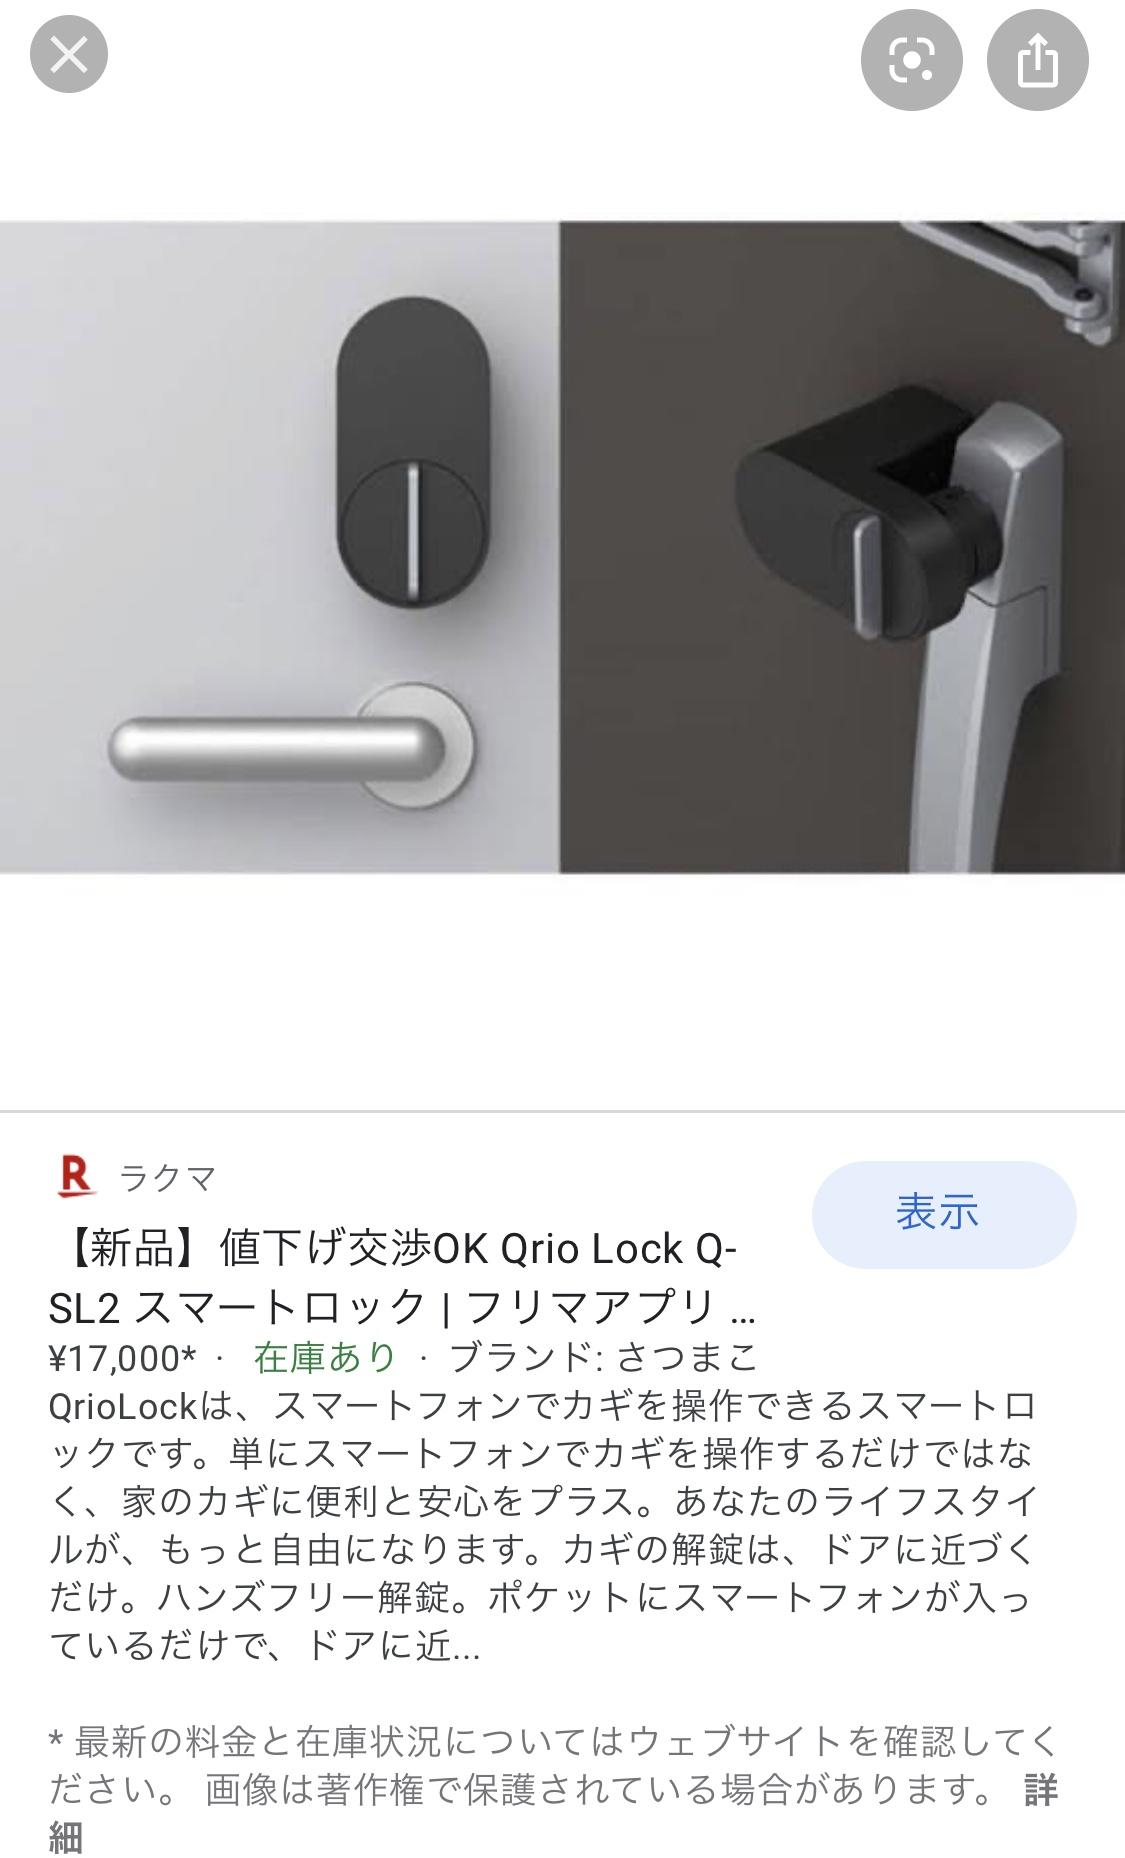 ありがとうございます。Qrio Lock...